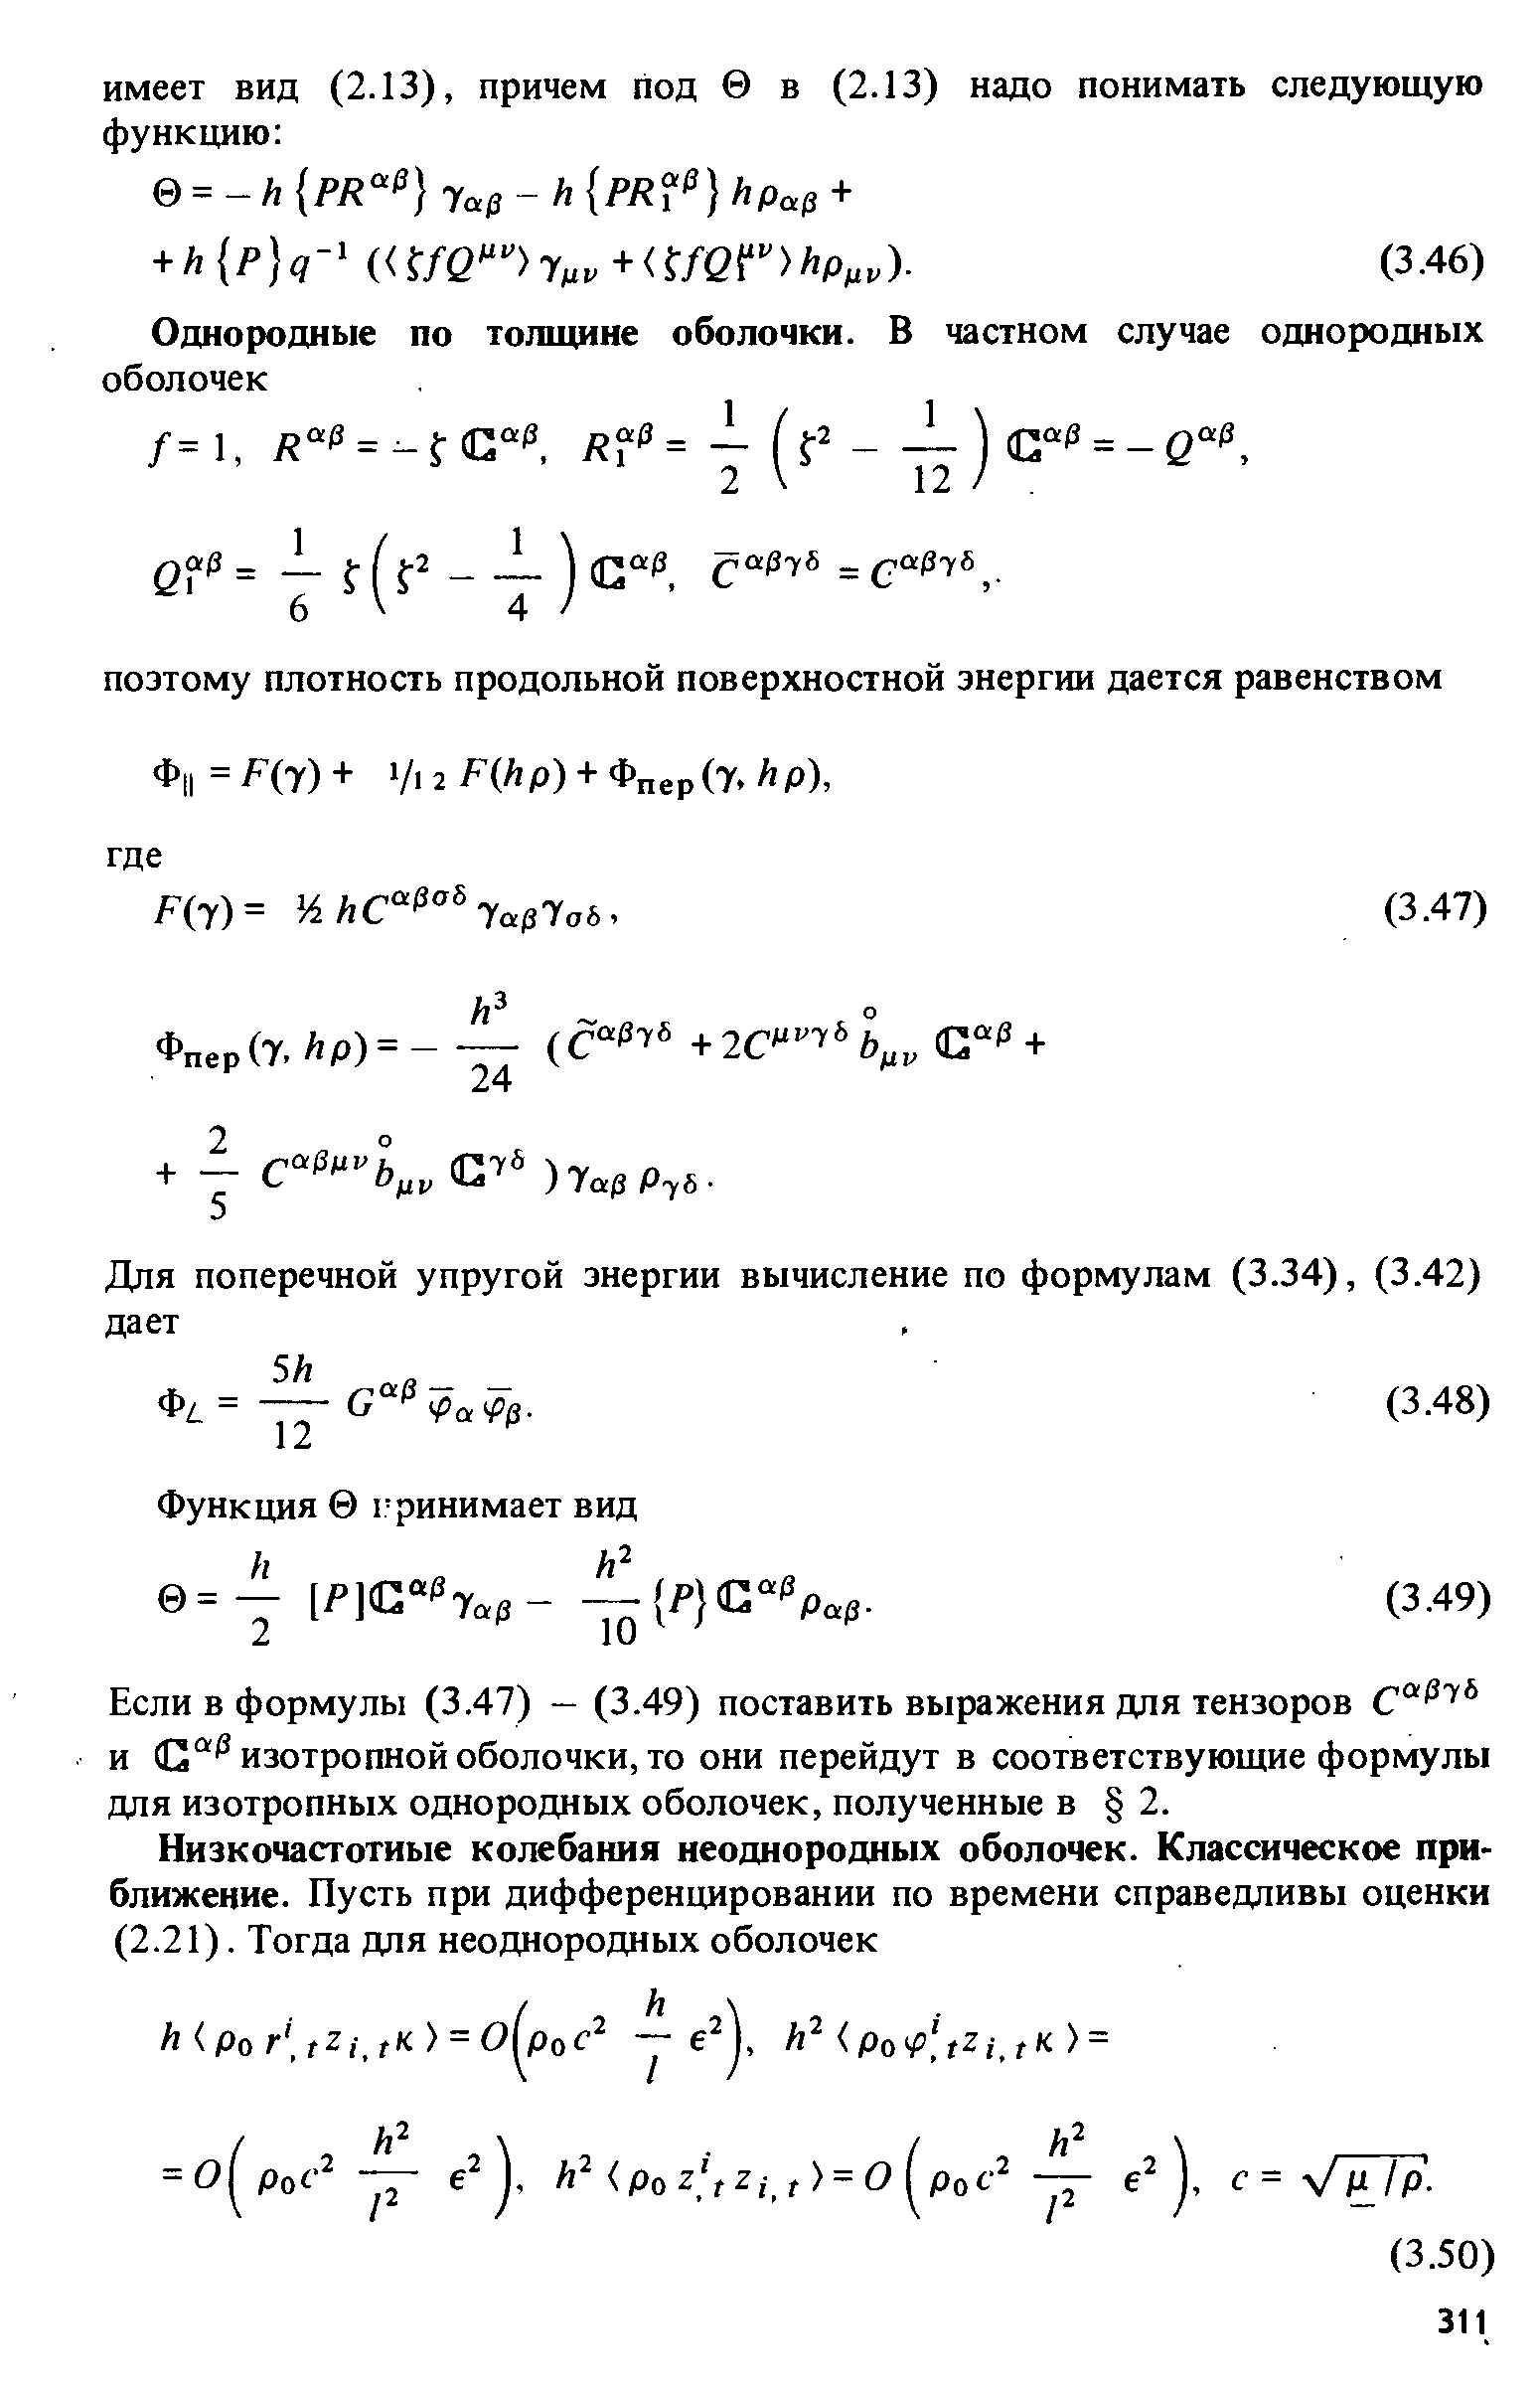 Если в формулы (3.47) - (3.49) поставить выражения для тензоров С0 7 и a(J изотропной оболочки, то они перейдут в соответствующие формулы для изотропных однородных оболочек, полученные в 2.
